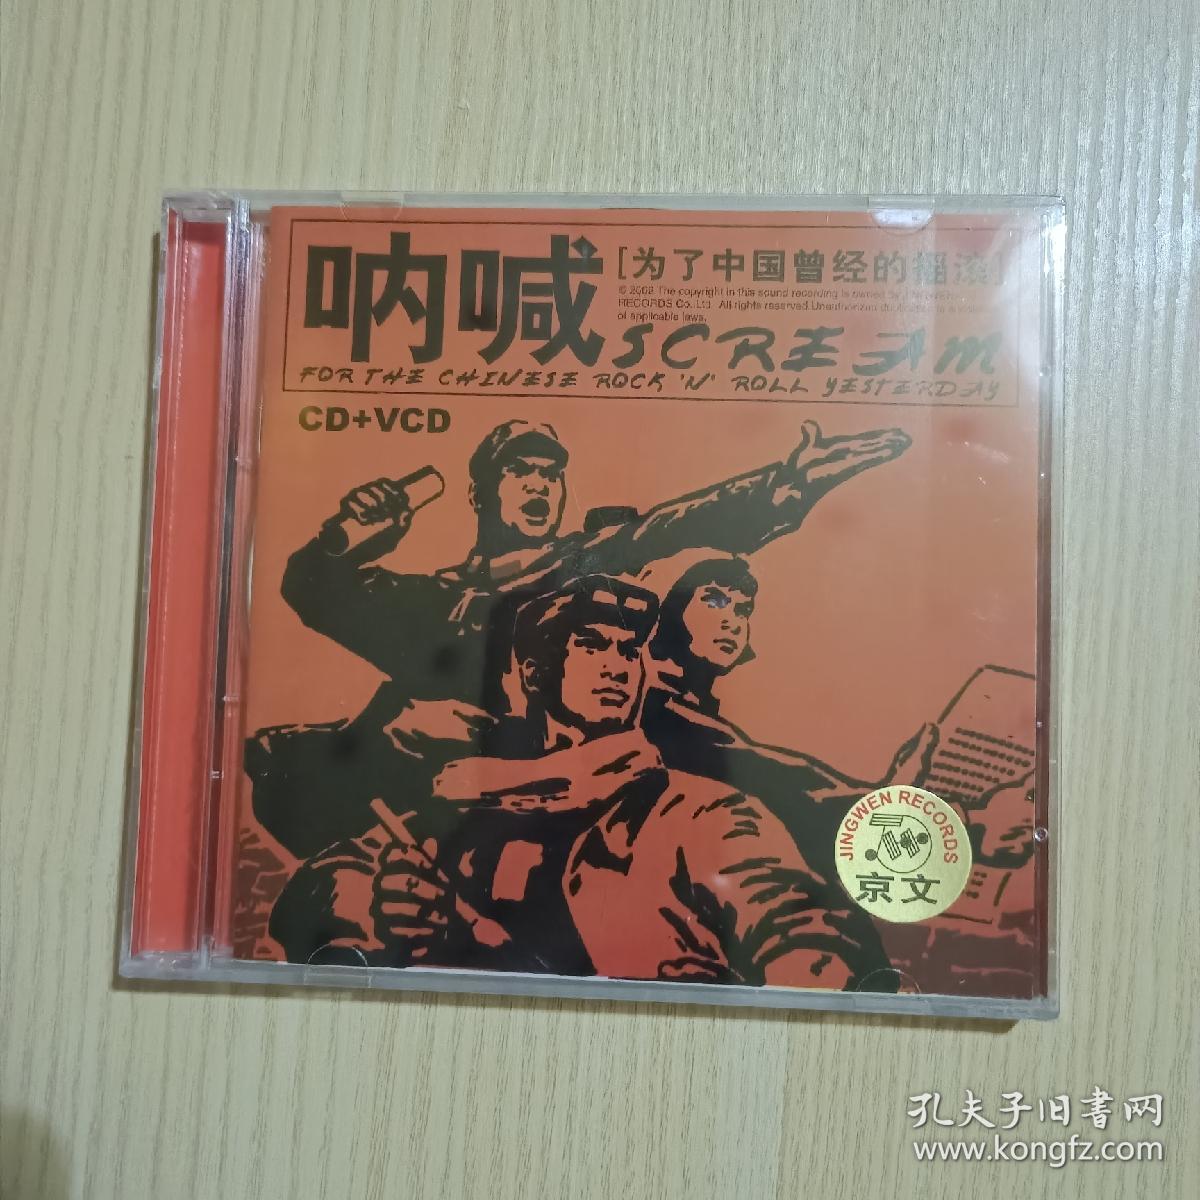 呐喊 为了中国曾经的摇滚cd+vcd